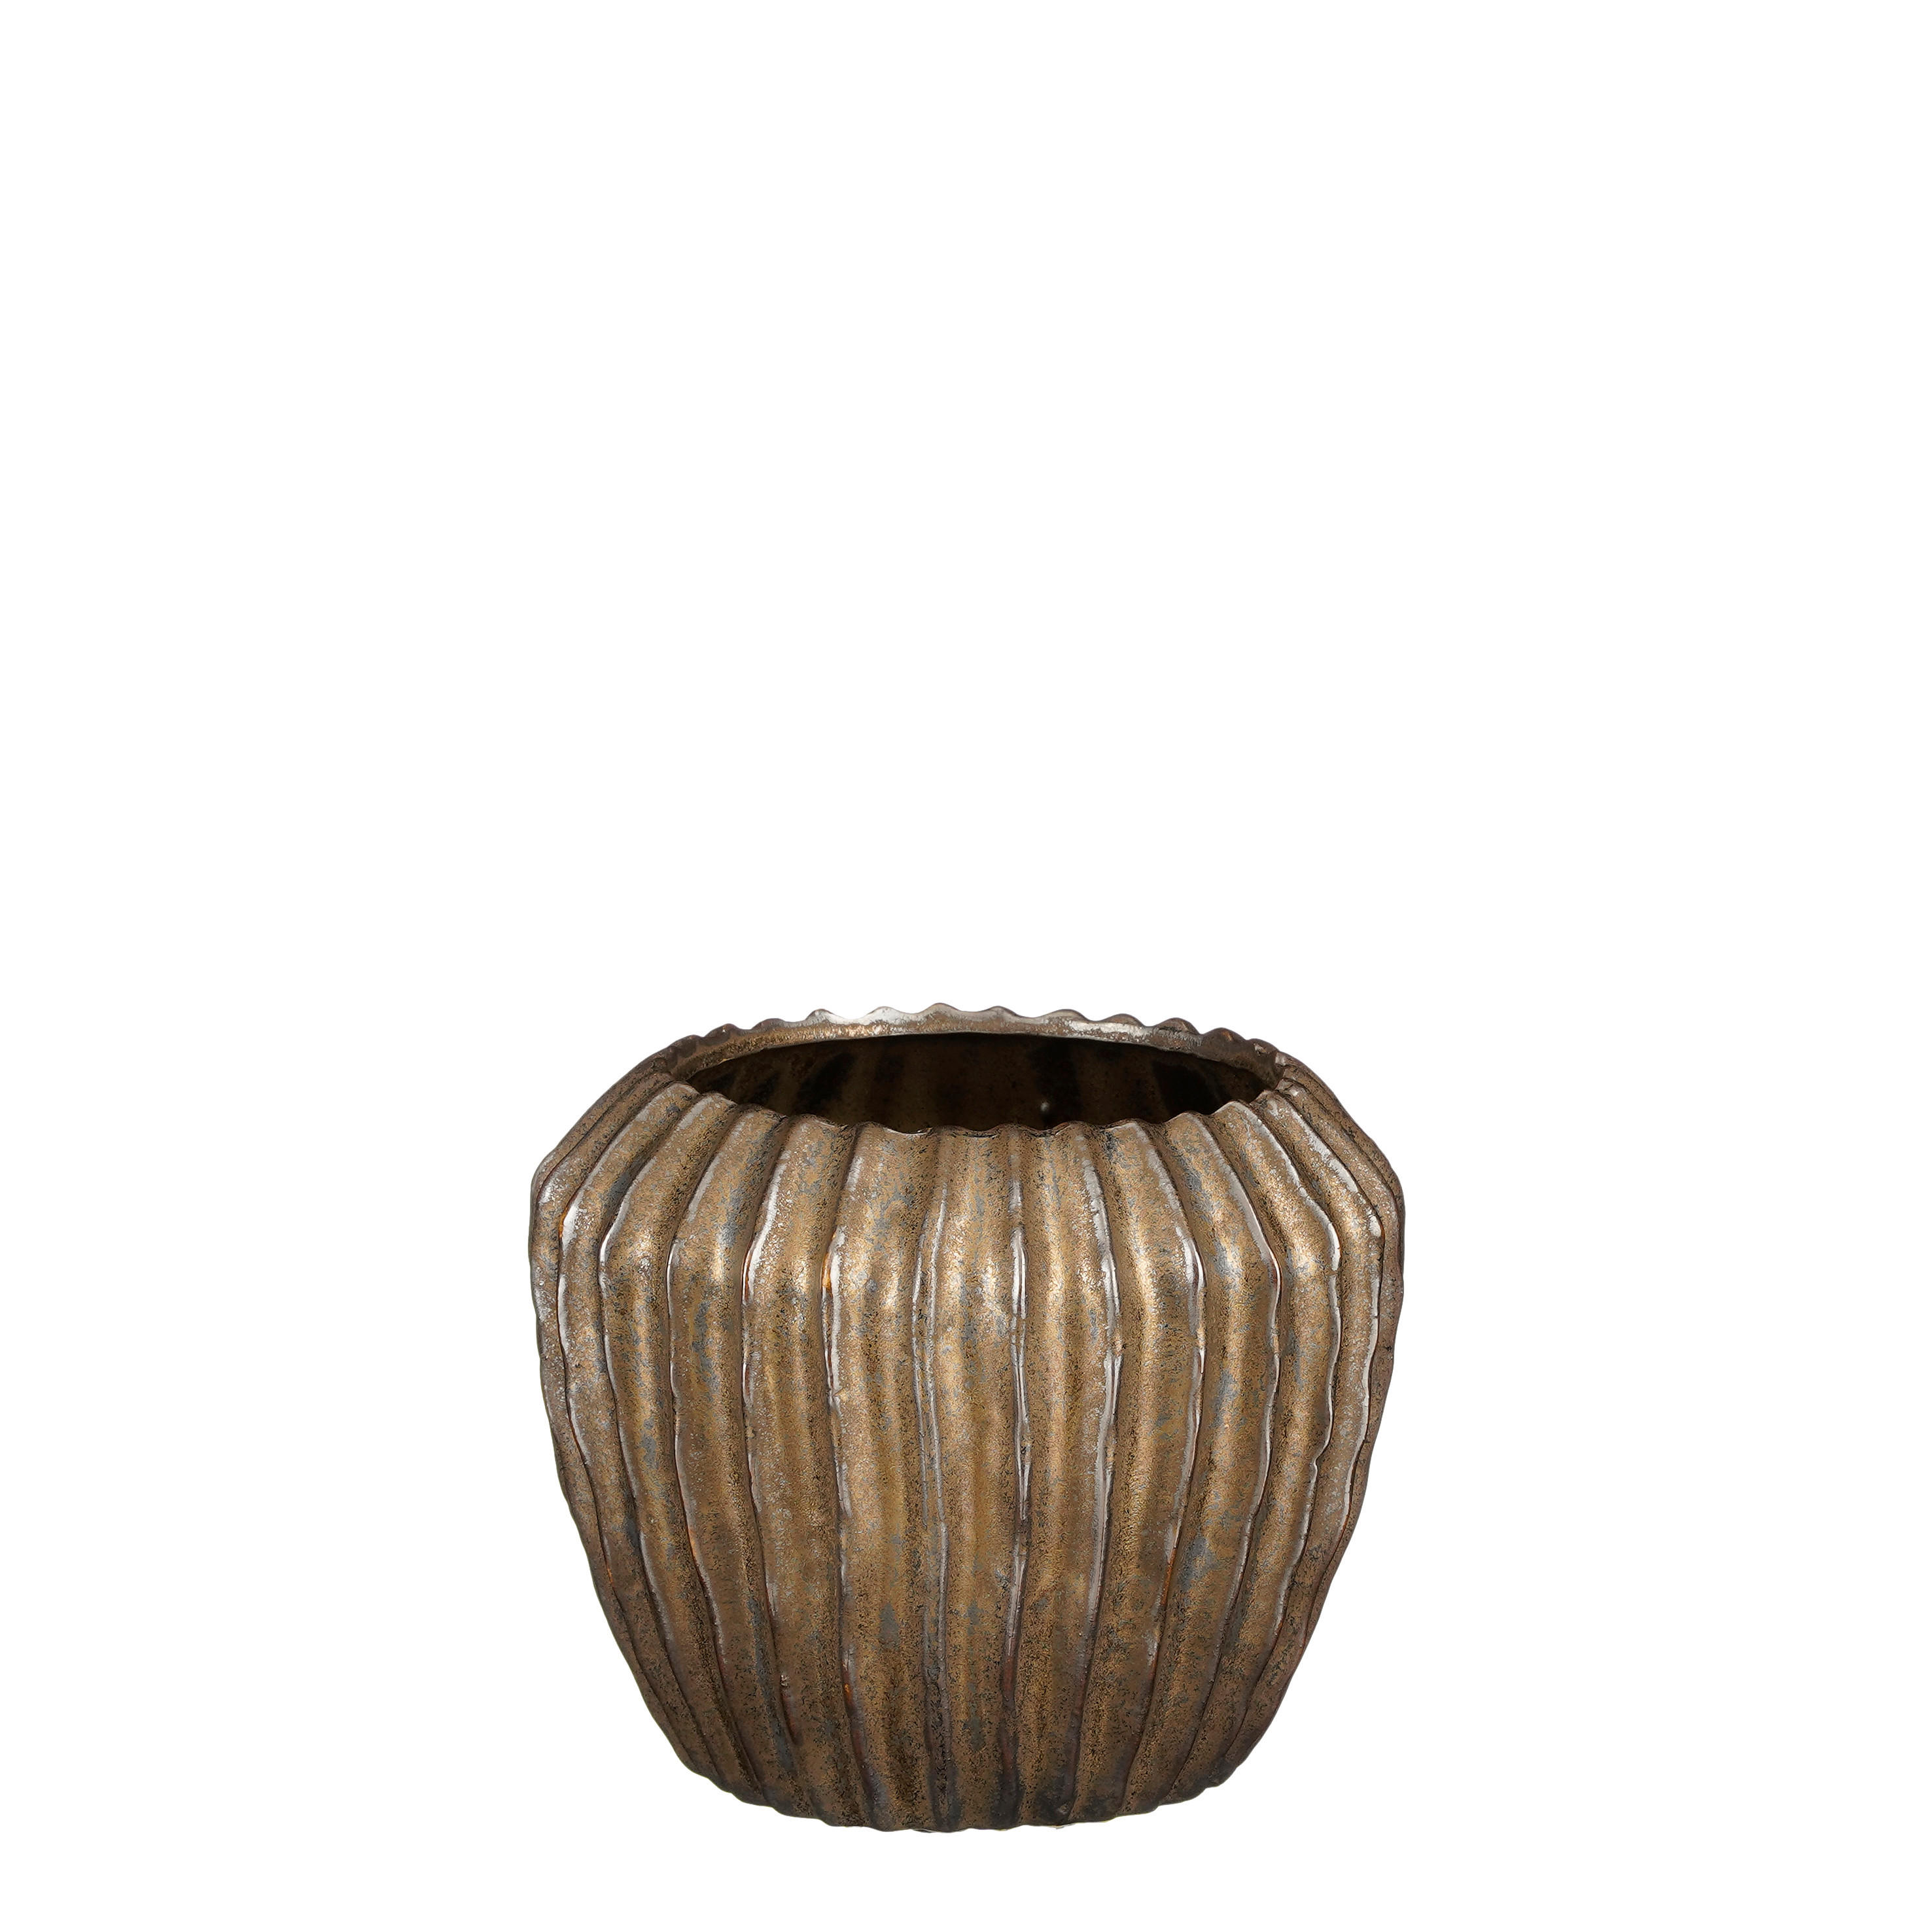 TEGLA ZA BILJKE  keramika  - brončane boje, Basics, keramika (16.5/14cm)